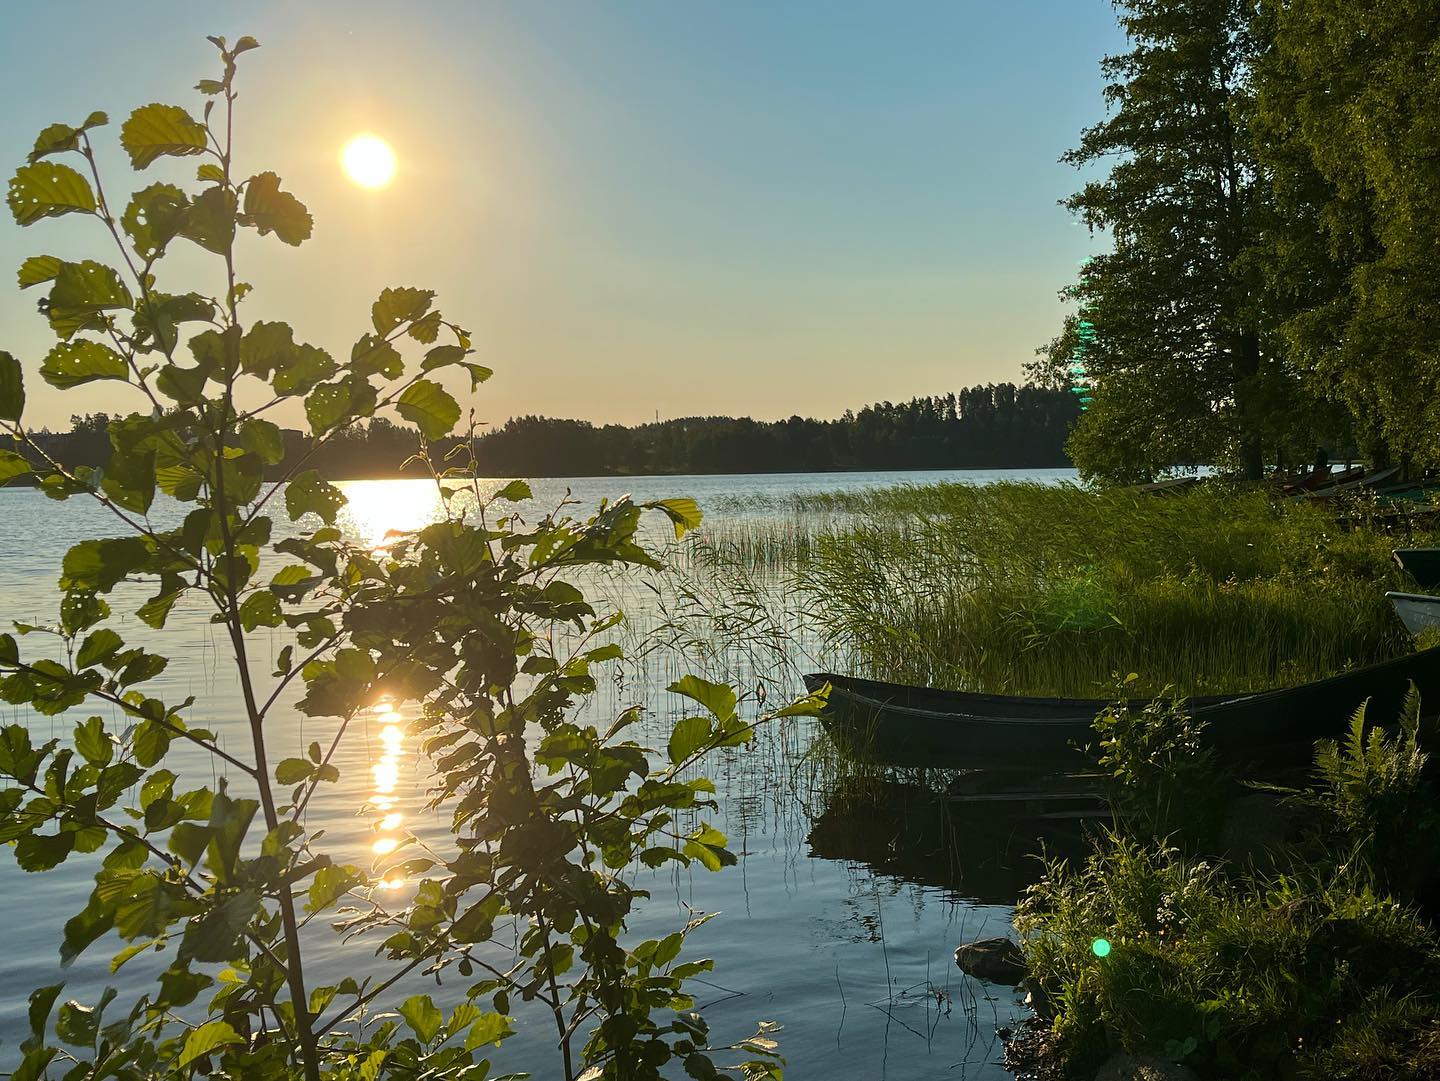 Mä lykkään purteni laineillen
ja järven poikki sen ohjaan
ja lasken salmia saarien
tuon pienen poukaman pohjaan.
Ja rannalla lahden tyynen sen
on tuoksuva tuomilehto,
koti peippojen, kerttujen keväisten
ja laulujen, tuoksujen kehto.
-Eino Leino-
#kesä #kesäaamu #järvi #koivu #vene #einoleino #runo #summer #lake #jyväskylä #tuomiojärvi #boat #june